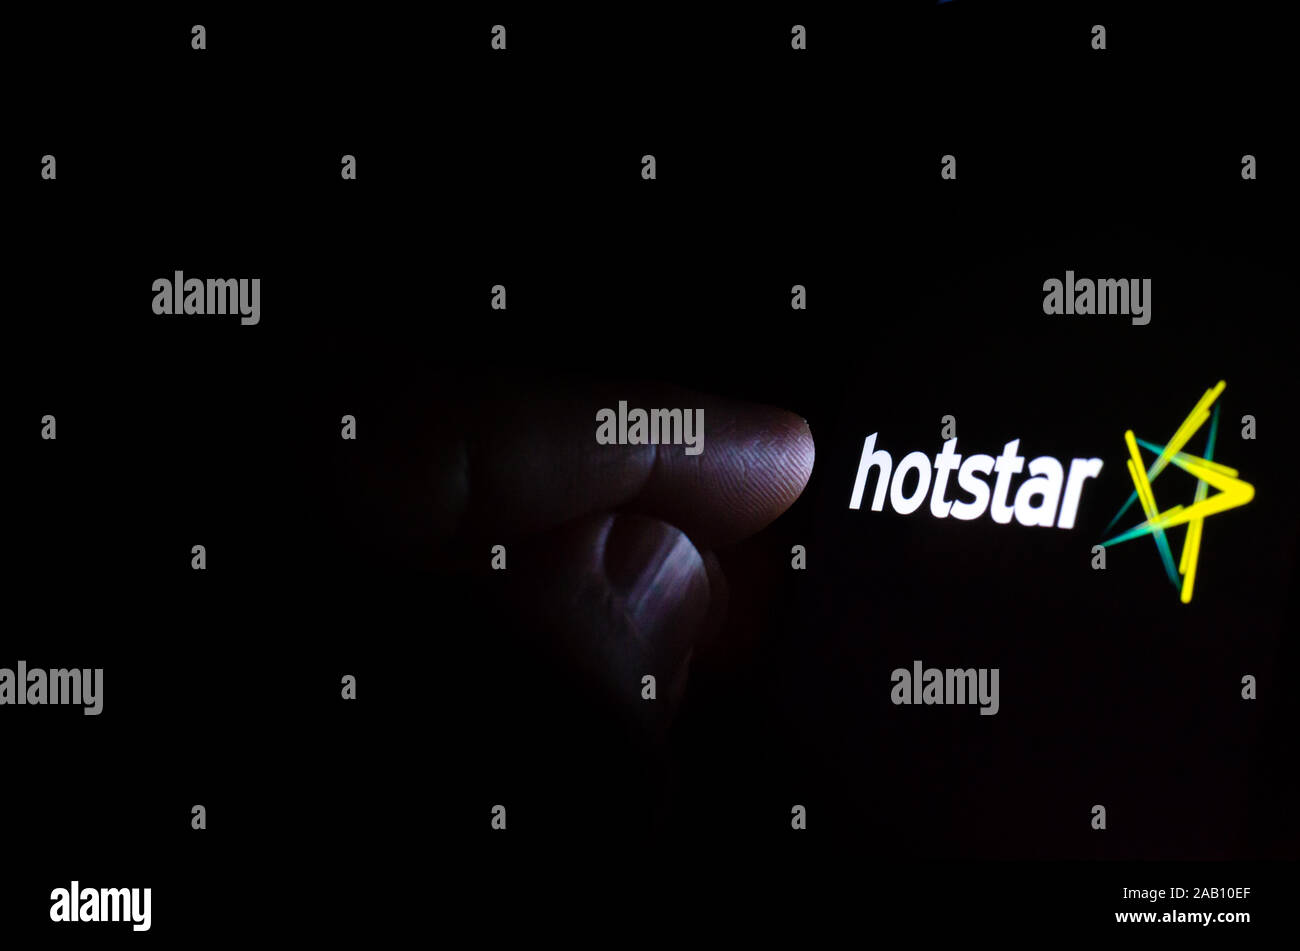 Hotstar streaming service logo à l'écran dans une pièce sombre et une main pointant sur elle. Hotstar est un service de diffusion de l'Inde. Banque D'Images